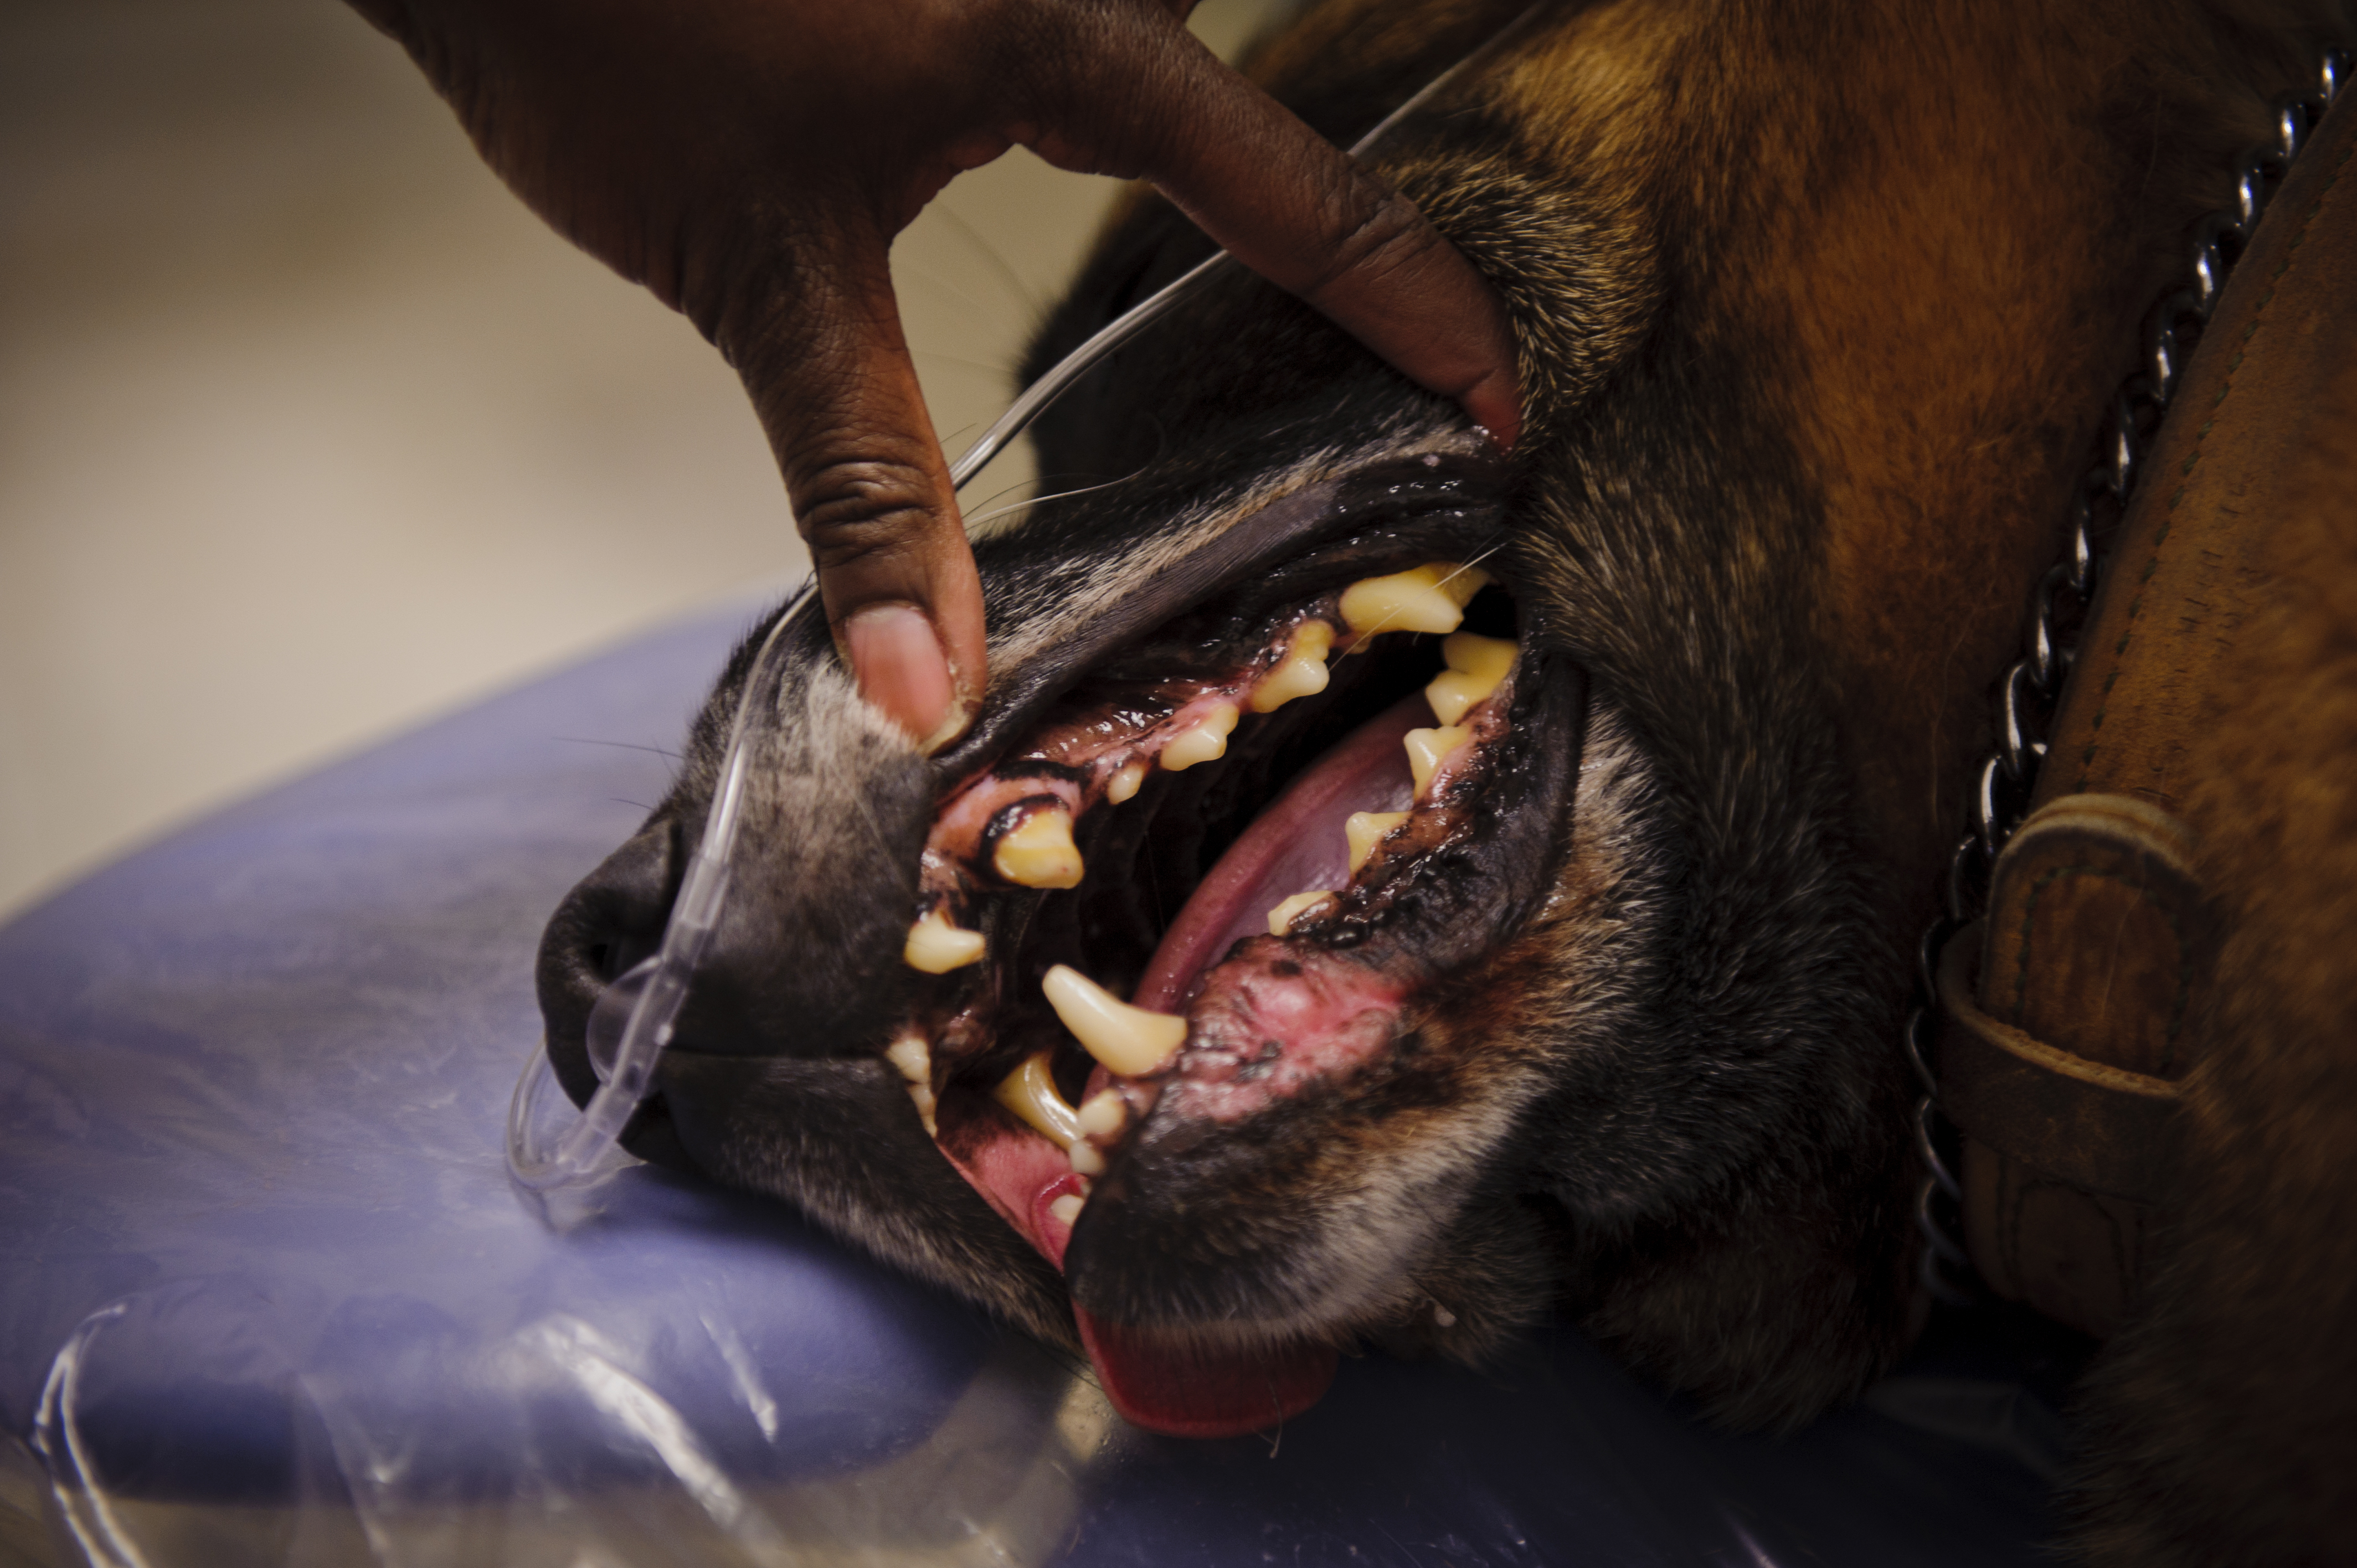 Výsledek obrázku pro dog mouth gum infection